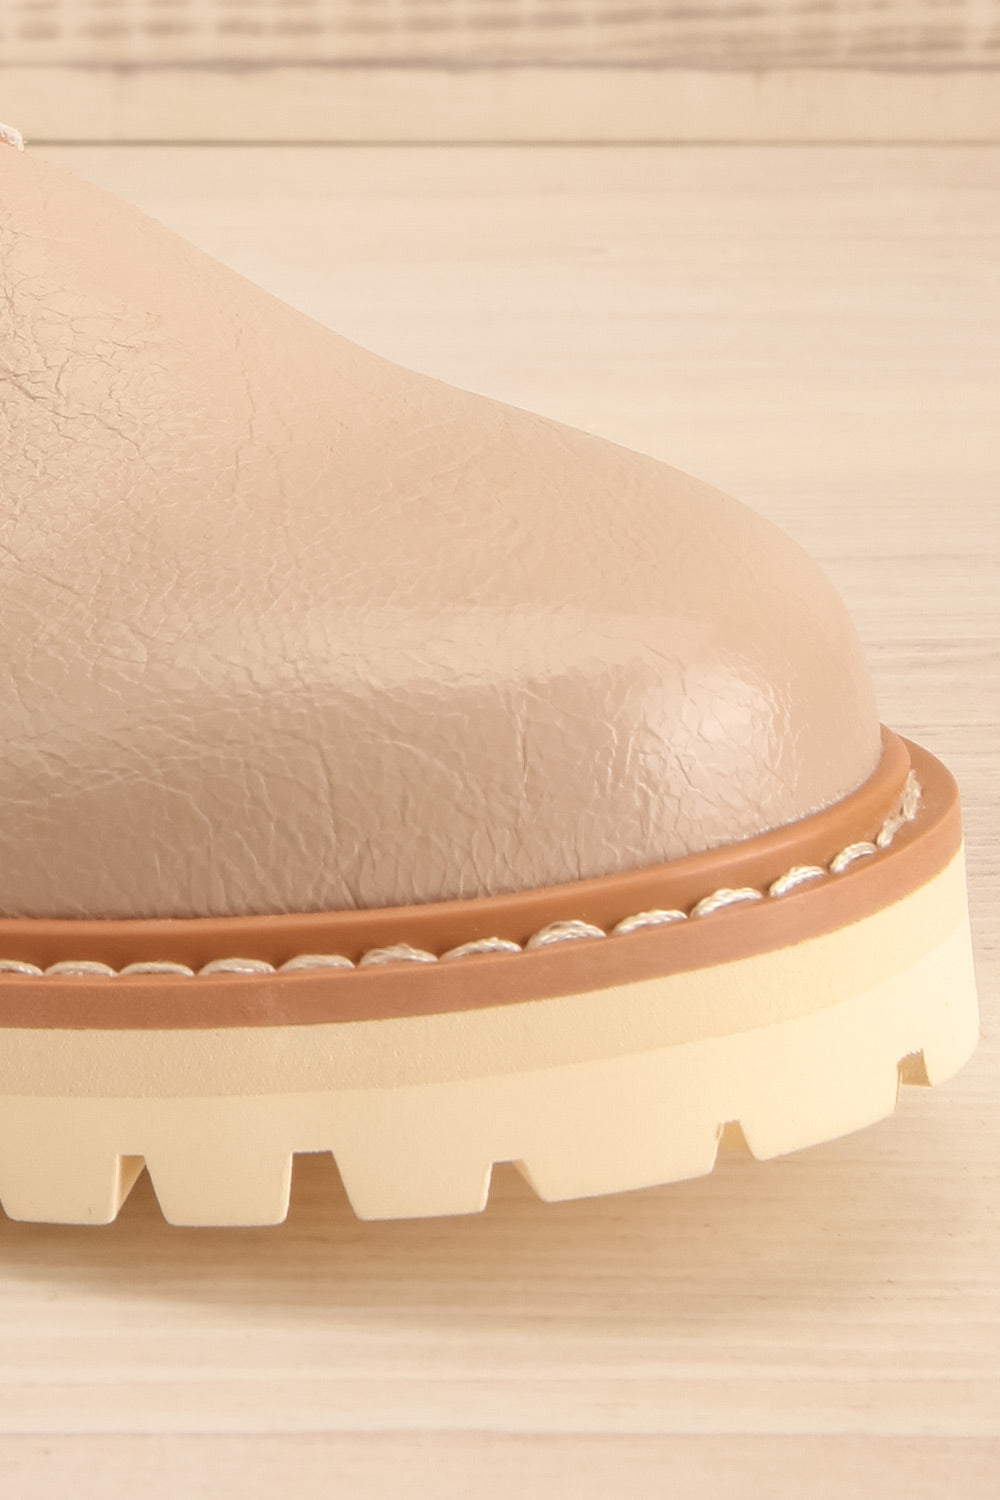 Beatrisse Beige Faux-Leather Loafers | La petite garçonne front close-up